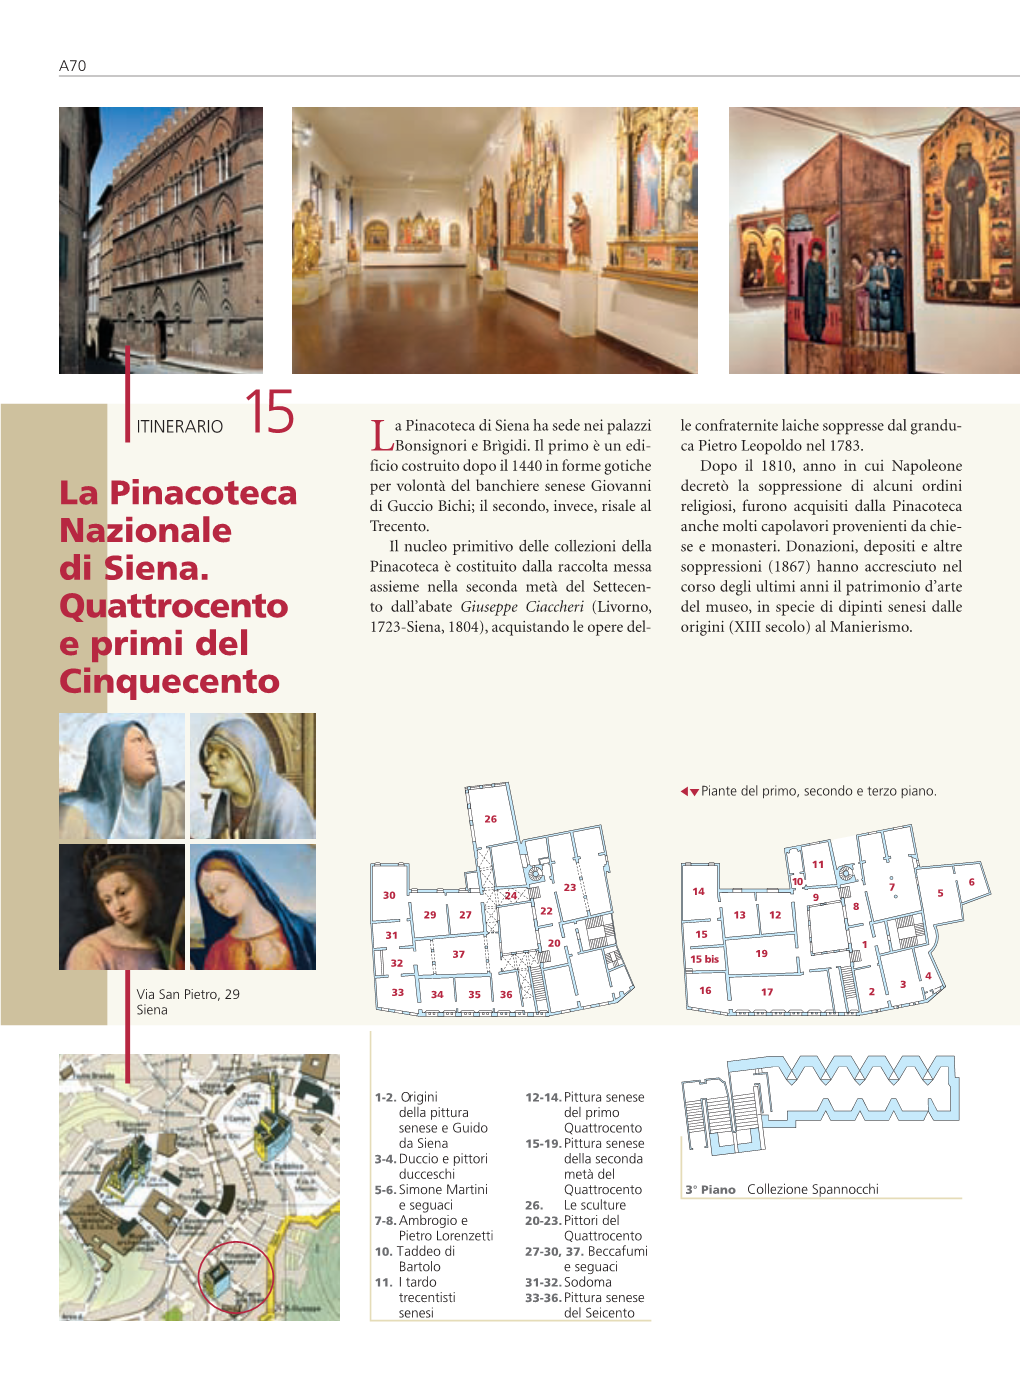 La Pinacoteca Nazionale Di Siena. Quattrocento E Primi Del Cinquecento